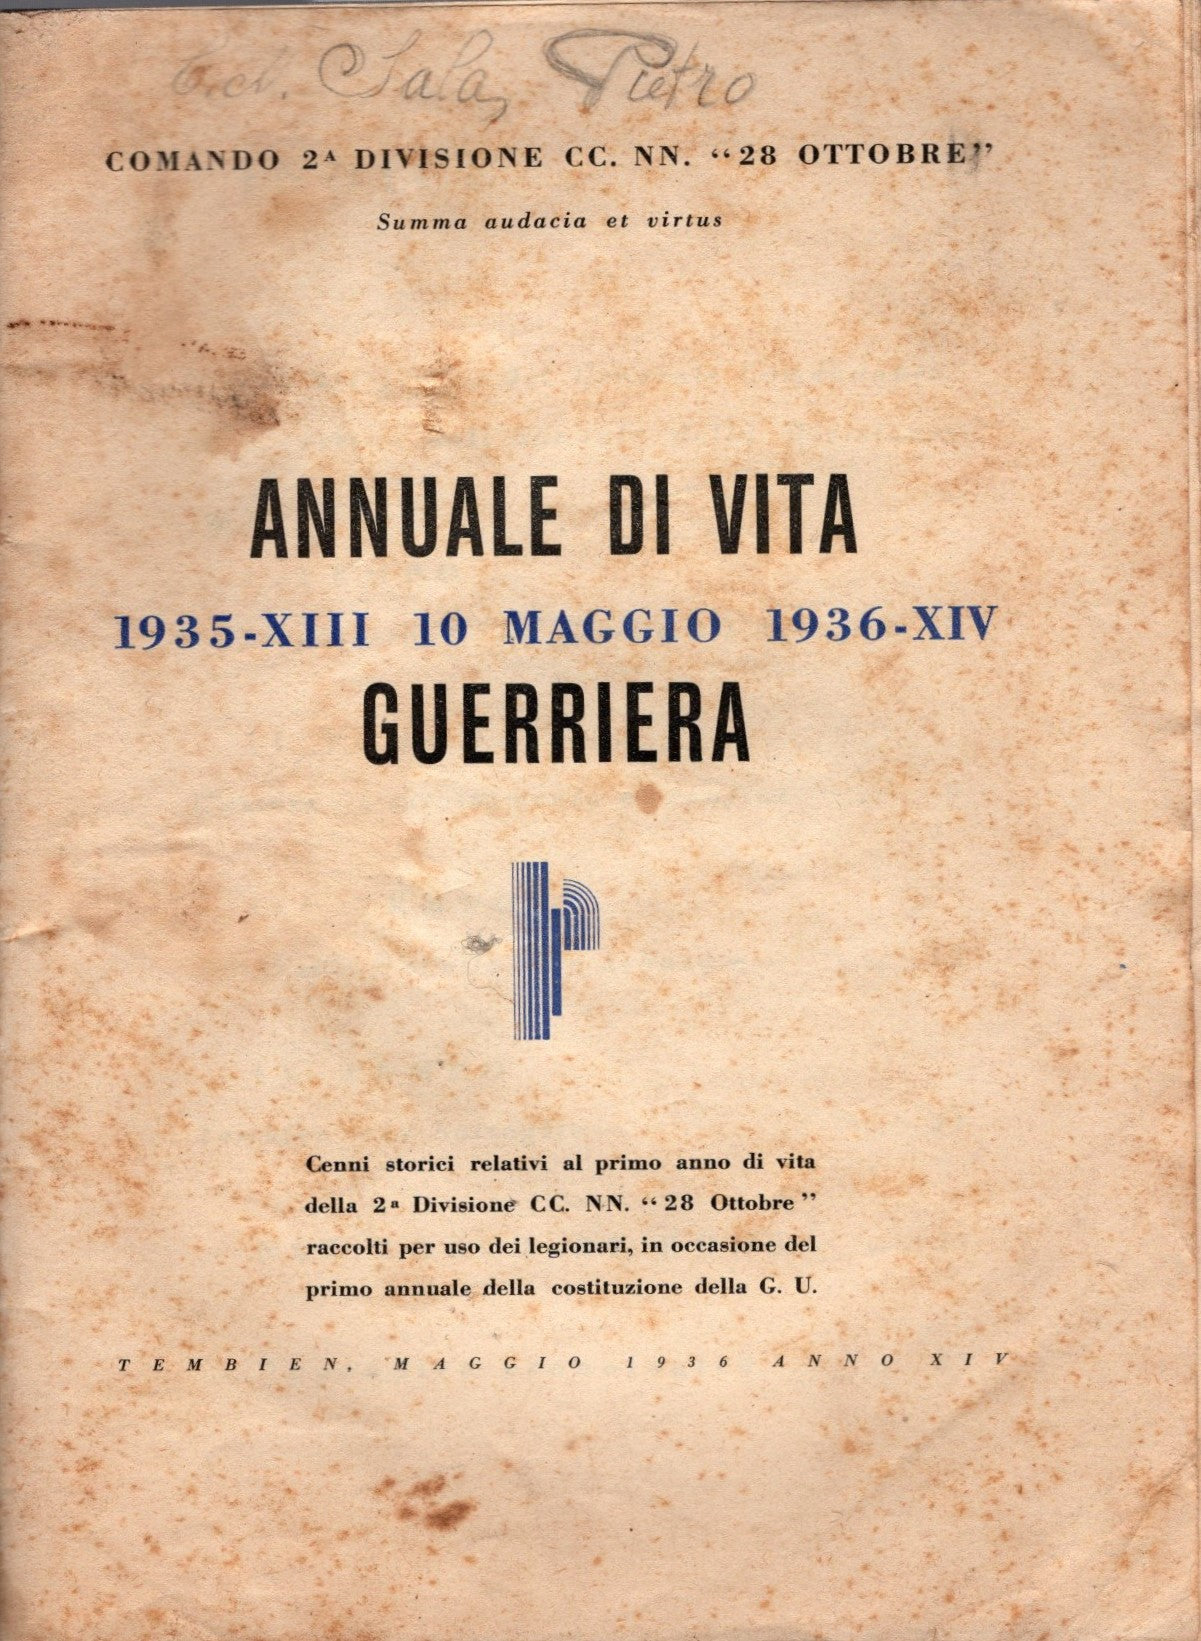 Annuale di vita guerriera  1935-XIII 10 maggio 1936-XIV